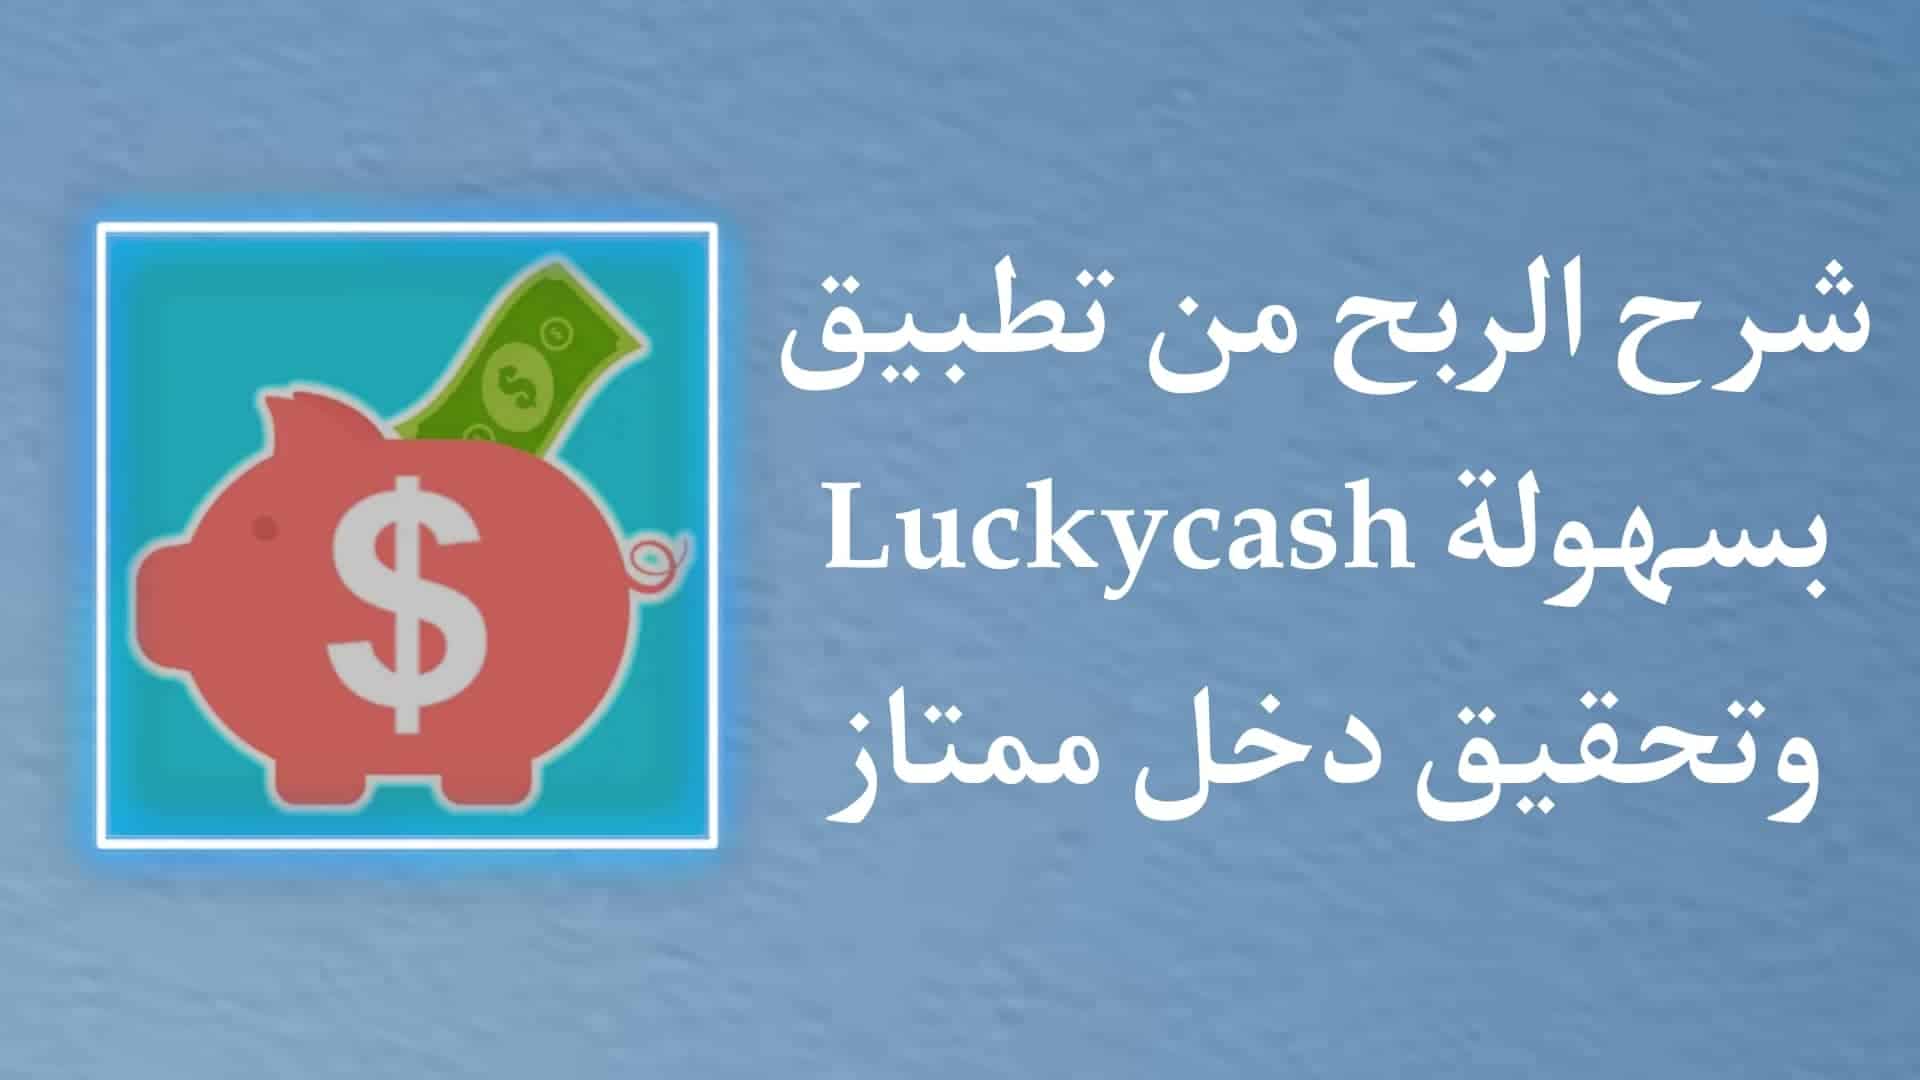 الربح من تطبيق LuckyCash - افضل تطبيقات الربح صادقة